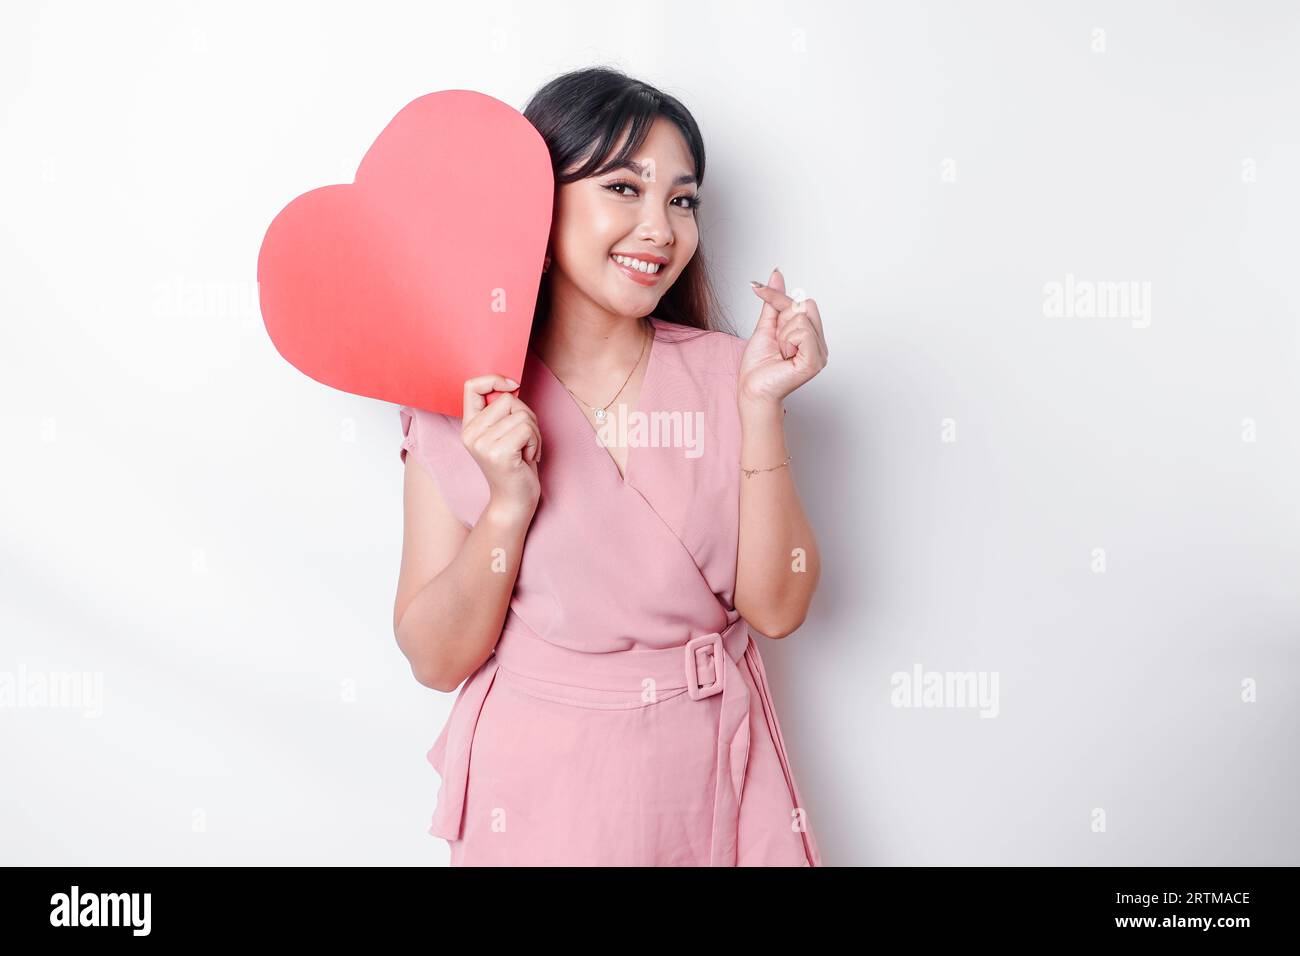 Eine glückliche junge asiatische Frau, die eine pinkfarbene Bluse trägt, fühlt sich wie eine romantische Geste an, die zarte Gefühle ausdrückt und ein rotes, herzförmiges Papier hält Stockfoto